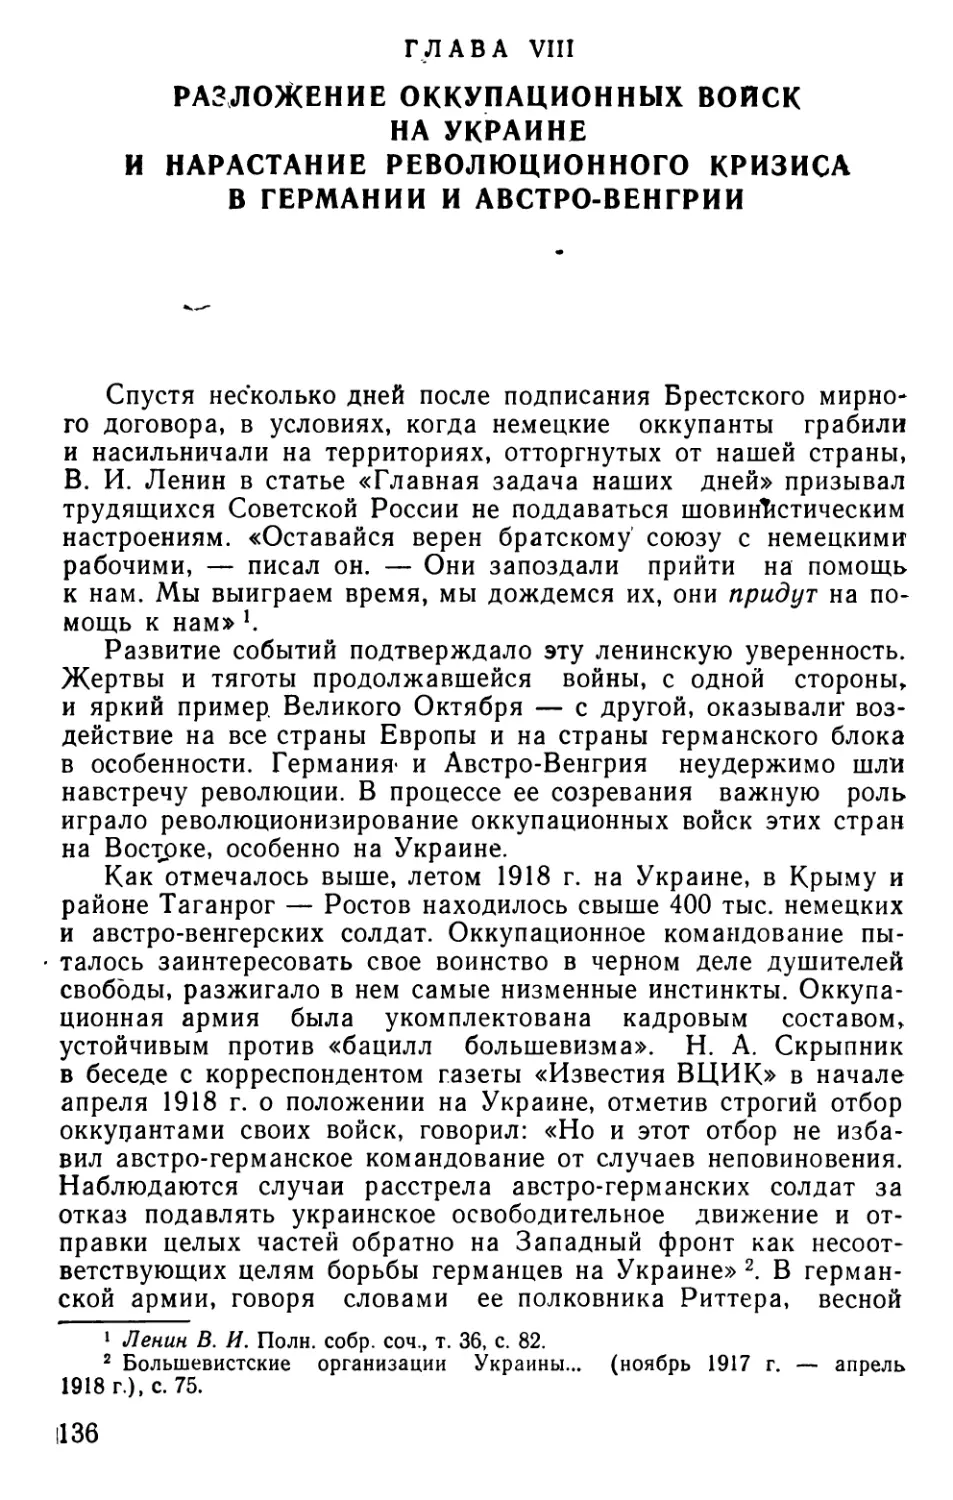 Глава VIII. Разложение оккупационных войск на Украине и нарастание революционного кризиса в Германии и Австро-Венгрии